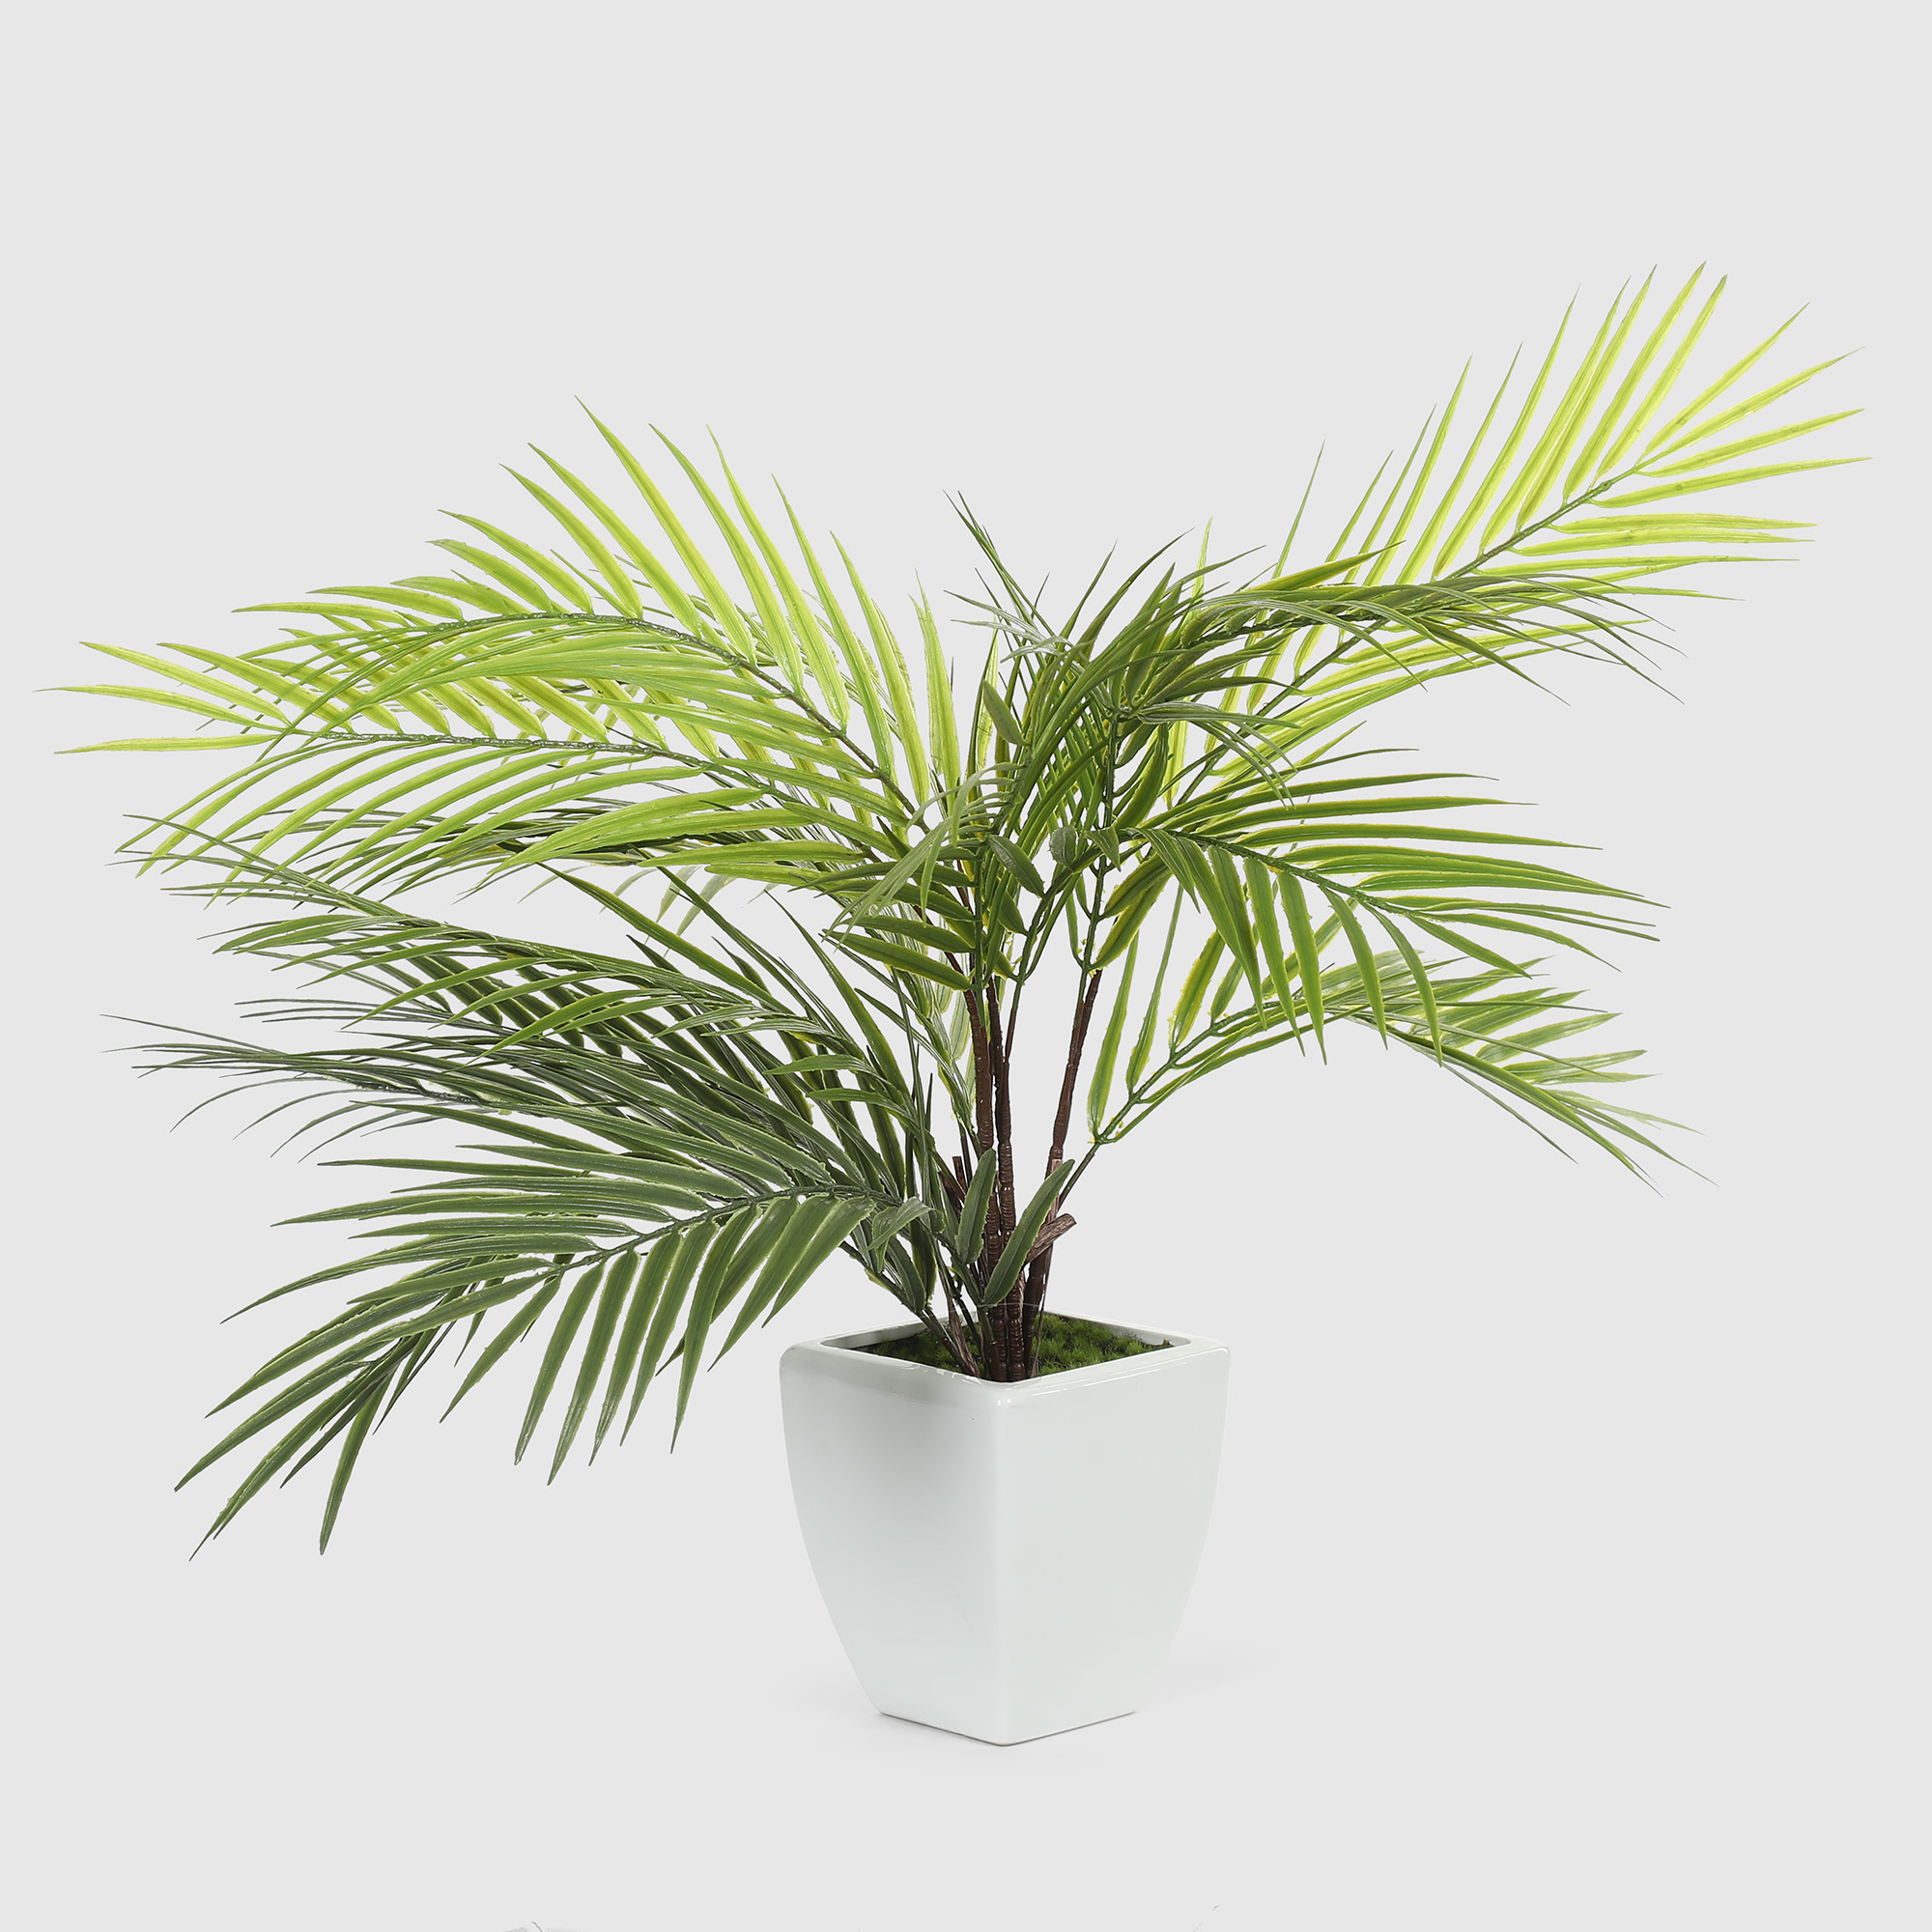 Куст пальмовый в белом кашпо Конэко-О 1013810159 60 см куст фикуса конэко о искусственный зеленый 135 см кашпо 18х20х12 см 3 куста